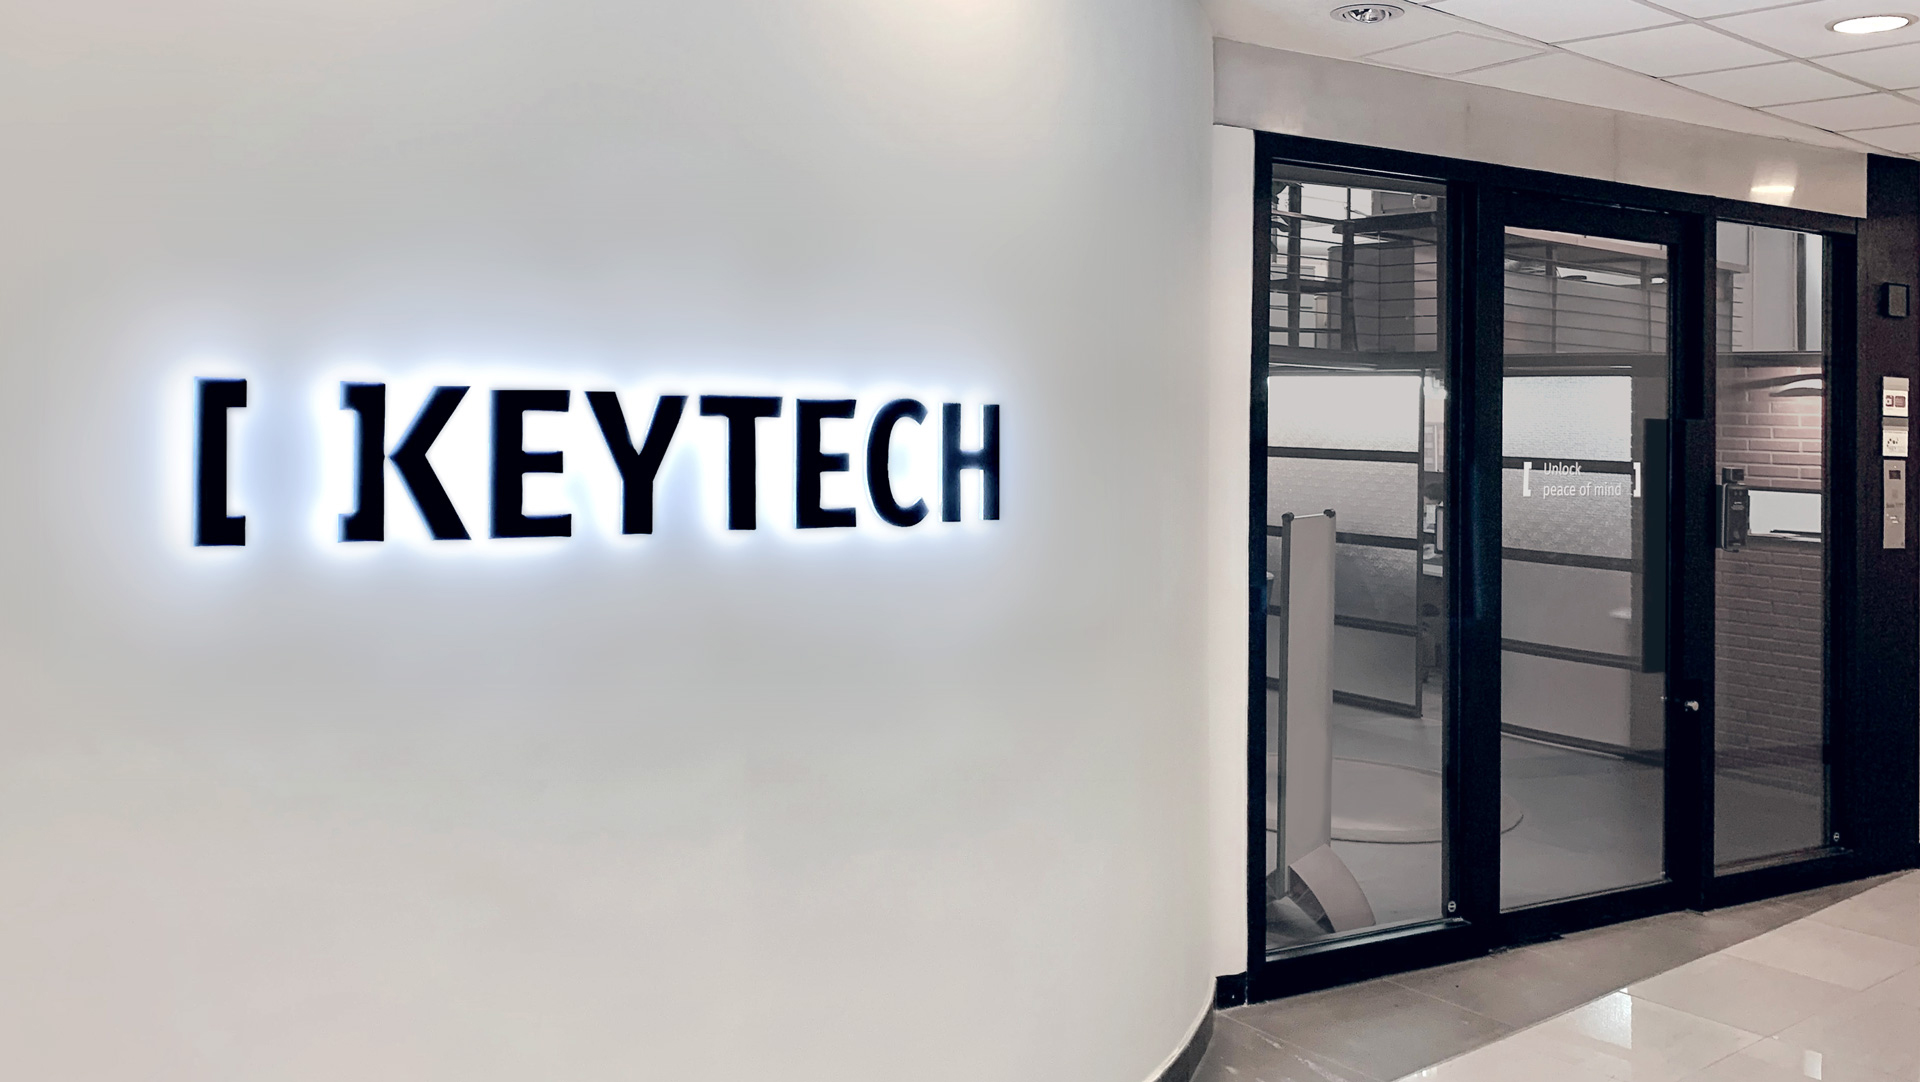 KeyTech